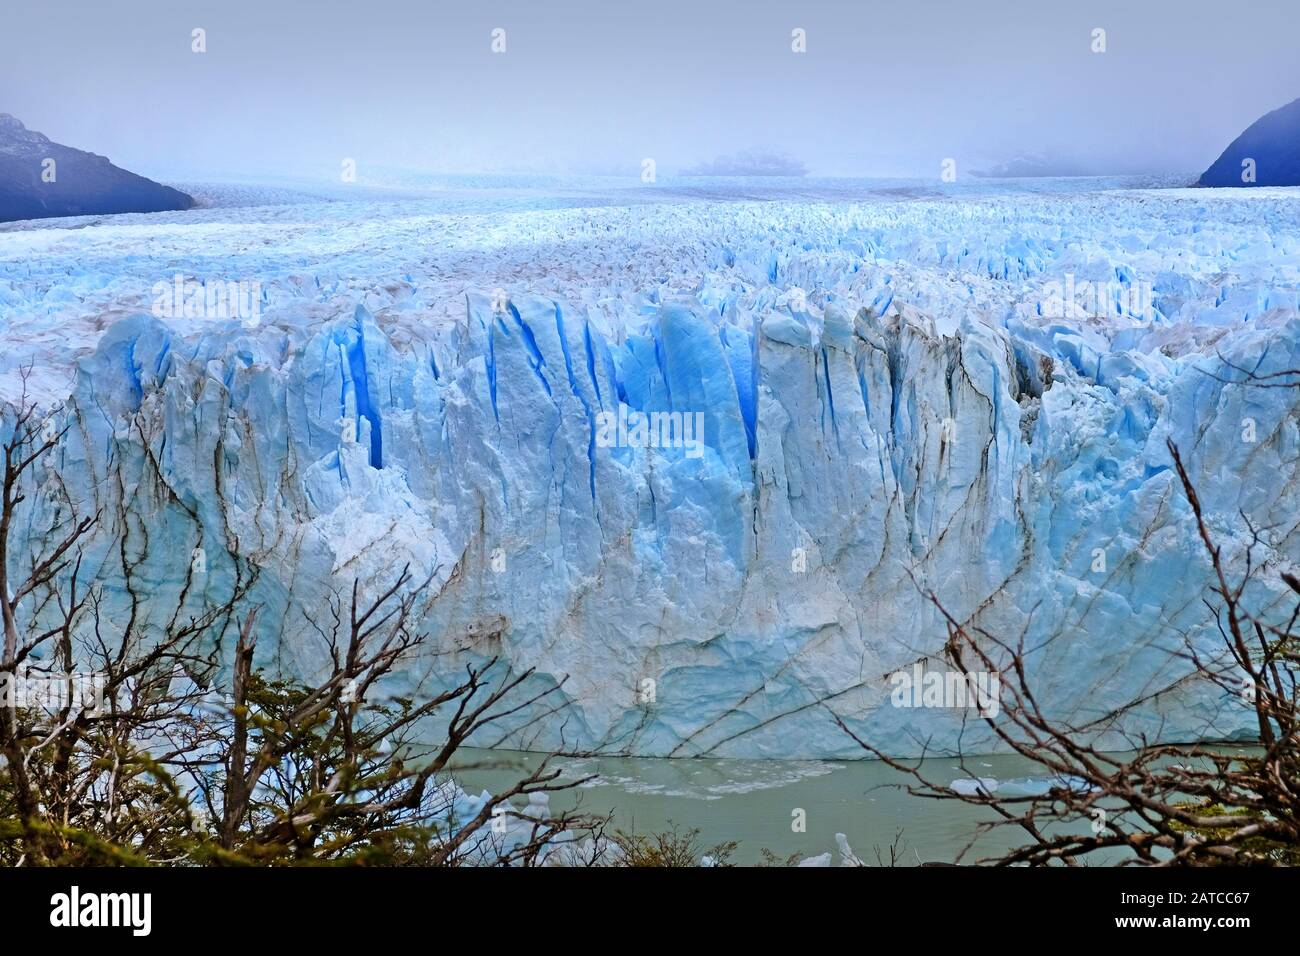 Vorderansicht des Perito Moreno Gletschers in El Calafate, Argentinien, gegen einen grauen und trüben Himmel. Stockfoto